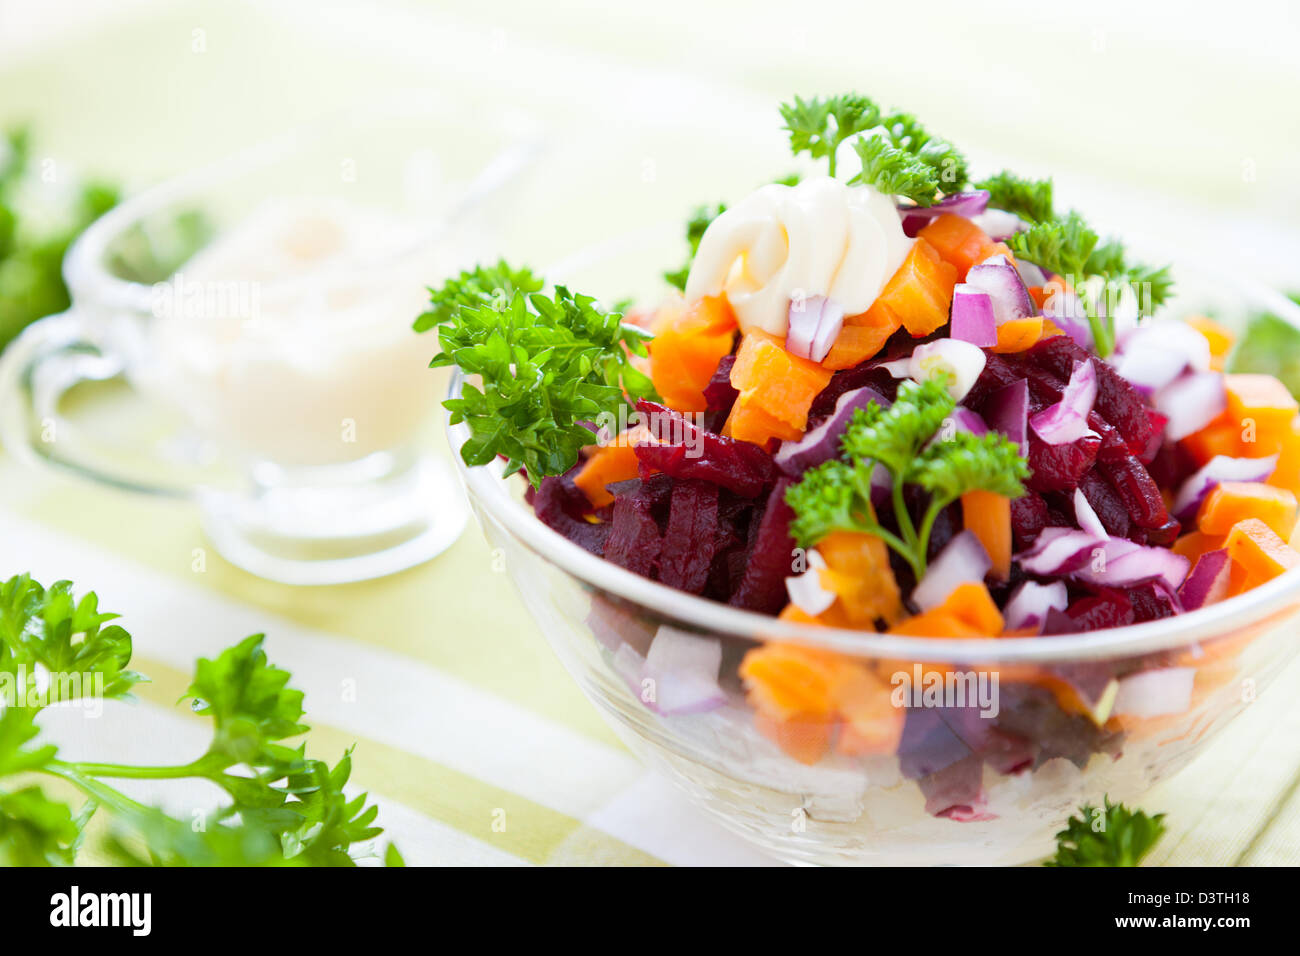 vegetable salad with a light sauce, closeup Stock Photo